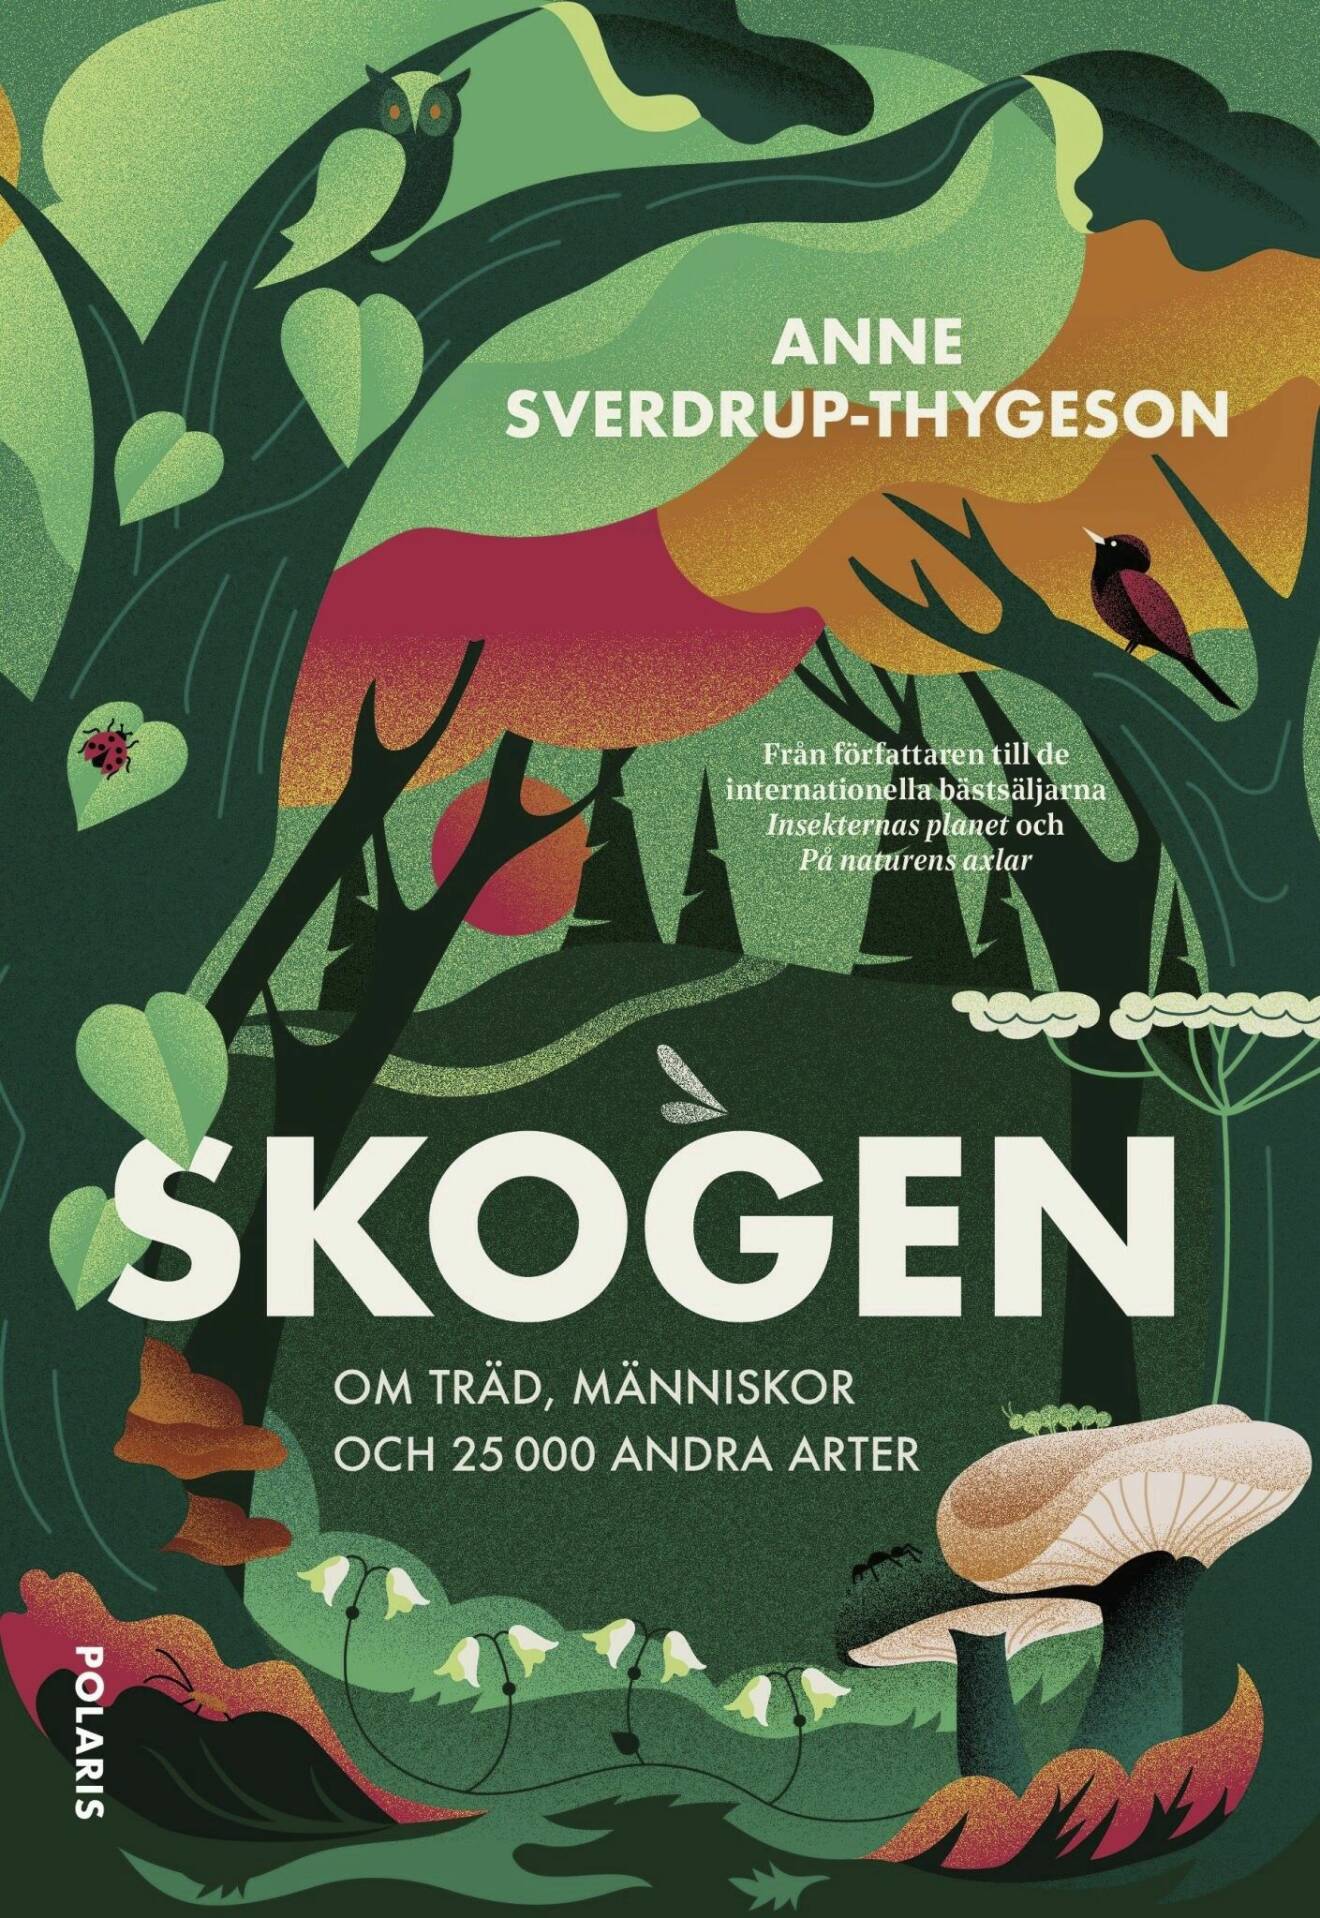 Skogen av Anne Sverdrup-Thygeson (Polaris).